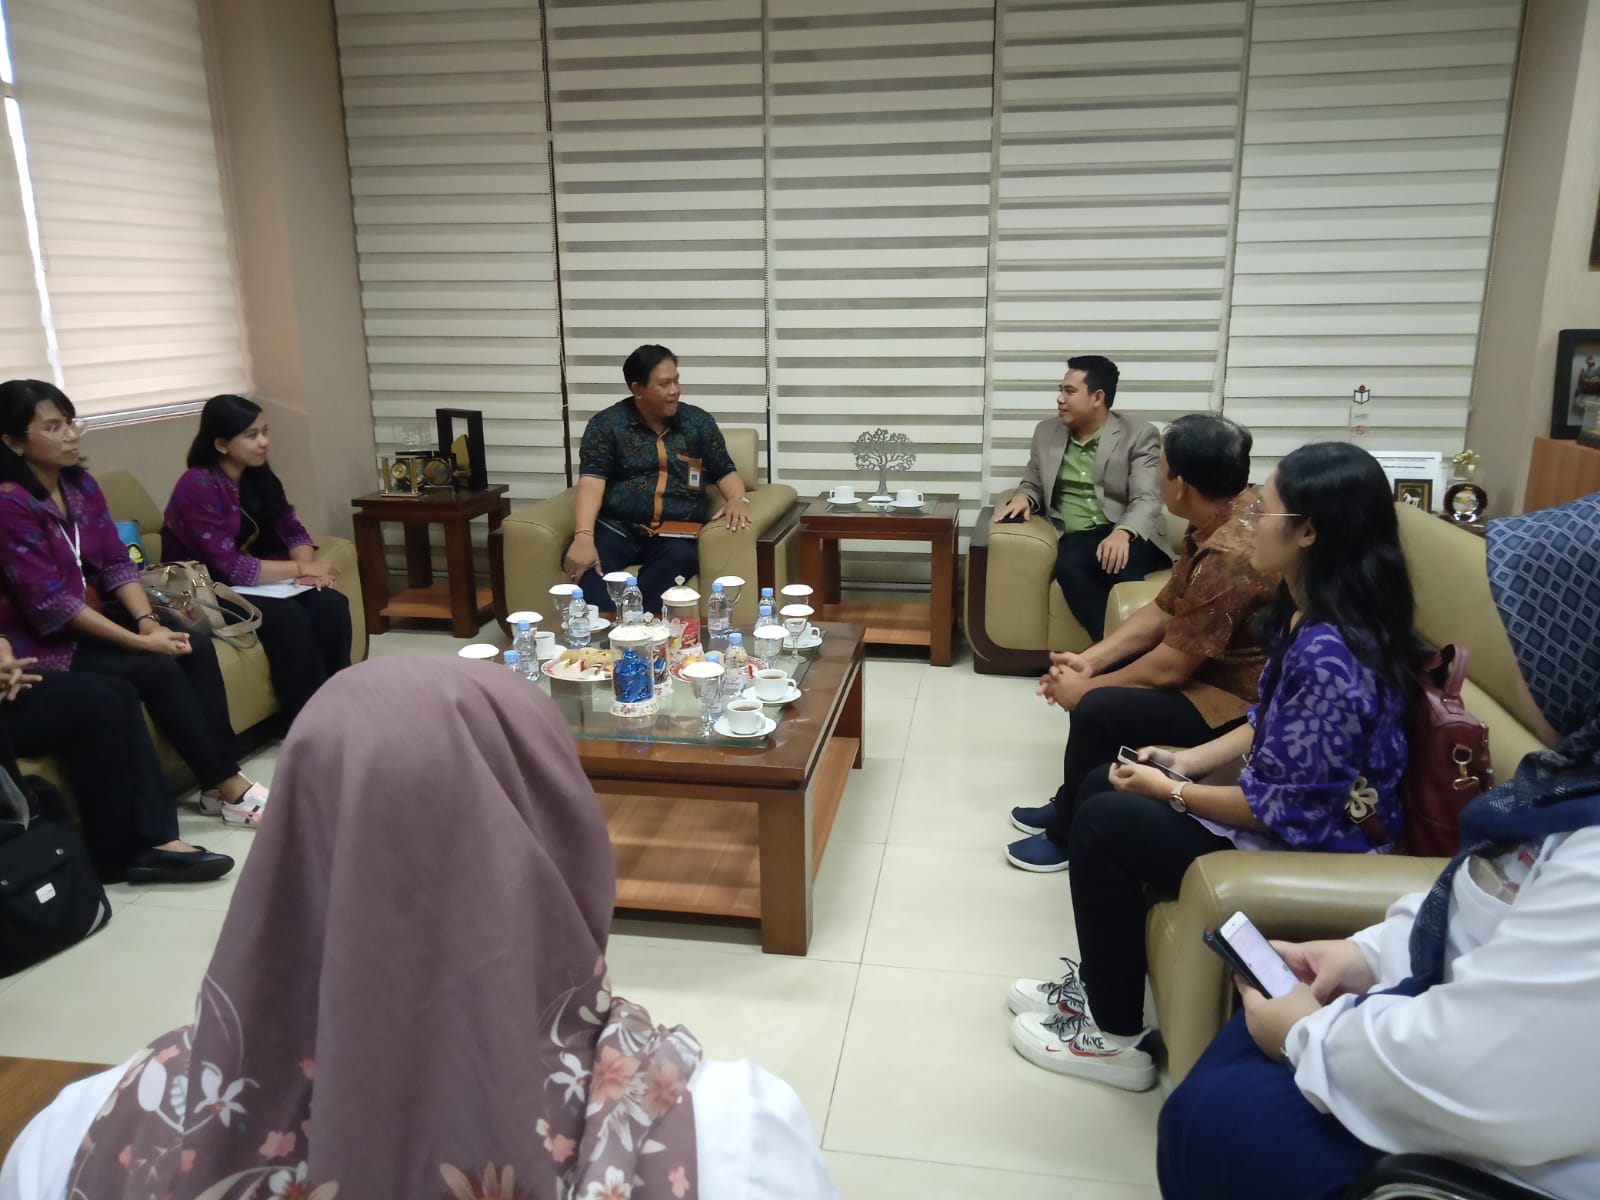 Universitas Bina Darma Palembang Dapat Kunjungan dari Politeknik Negeri Bali, Bahas Pengembangan Unit Bahasa